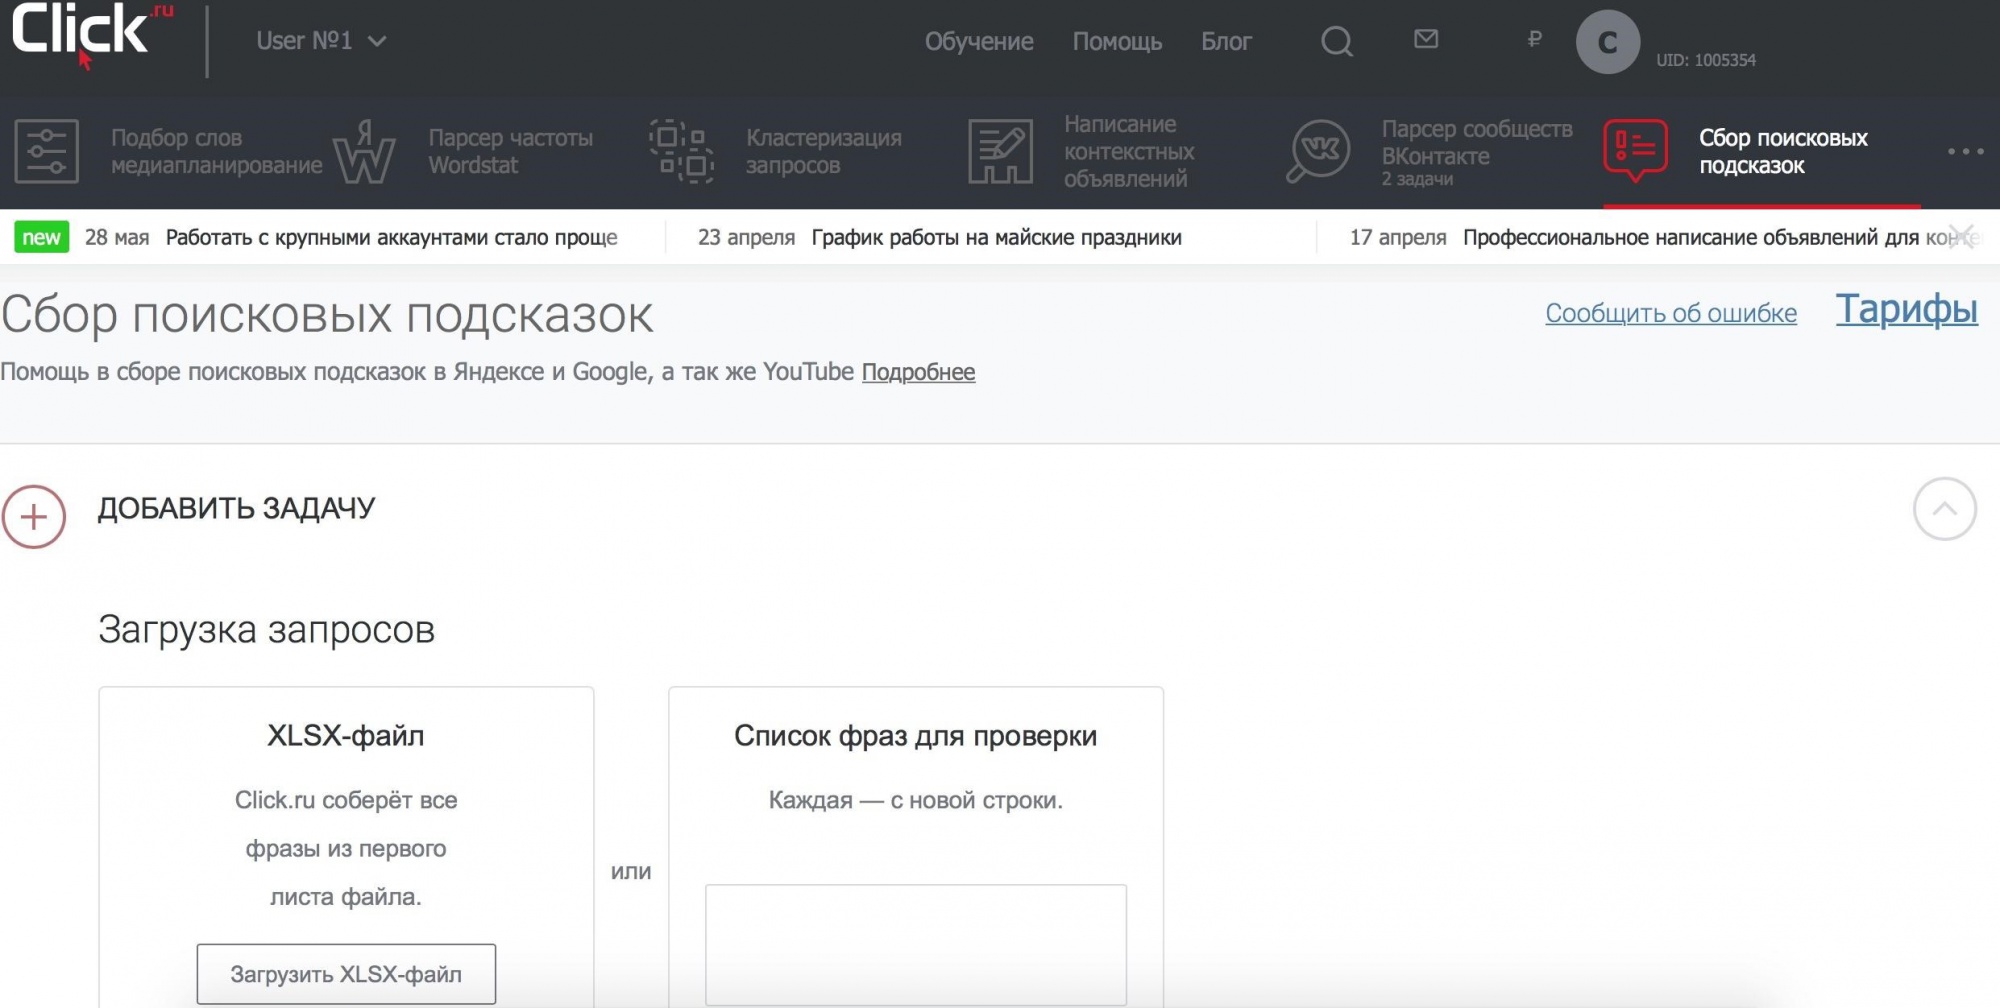 Как посмотреть поисковые подсказки с помощью Click.ru